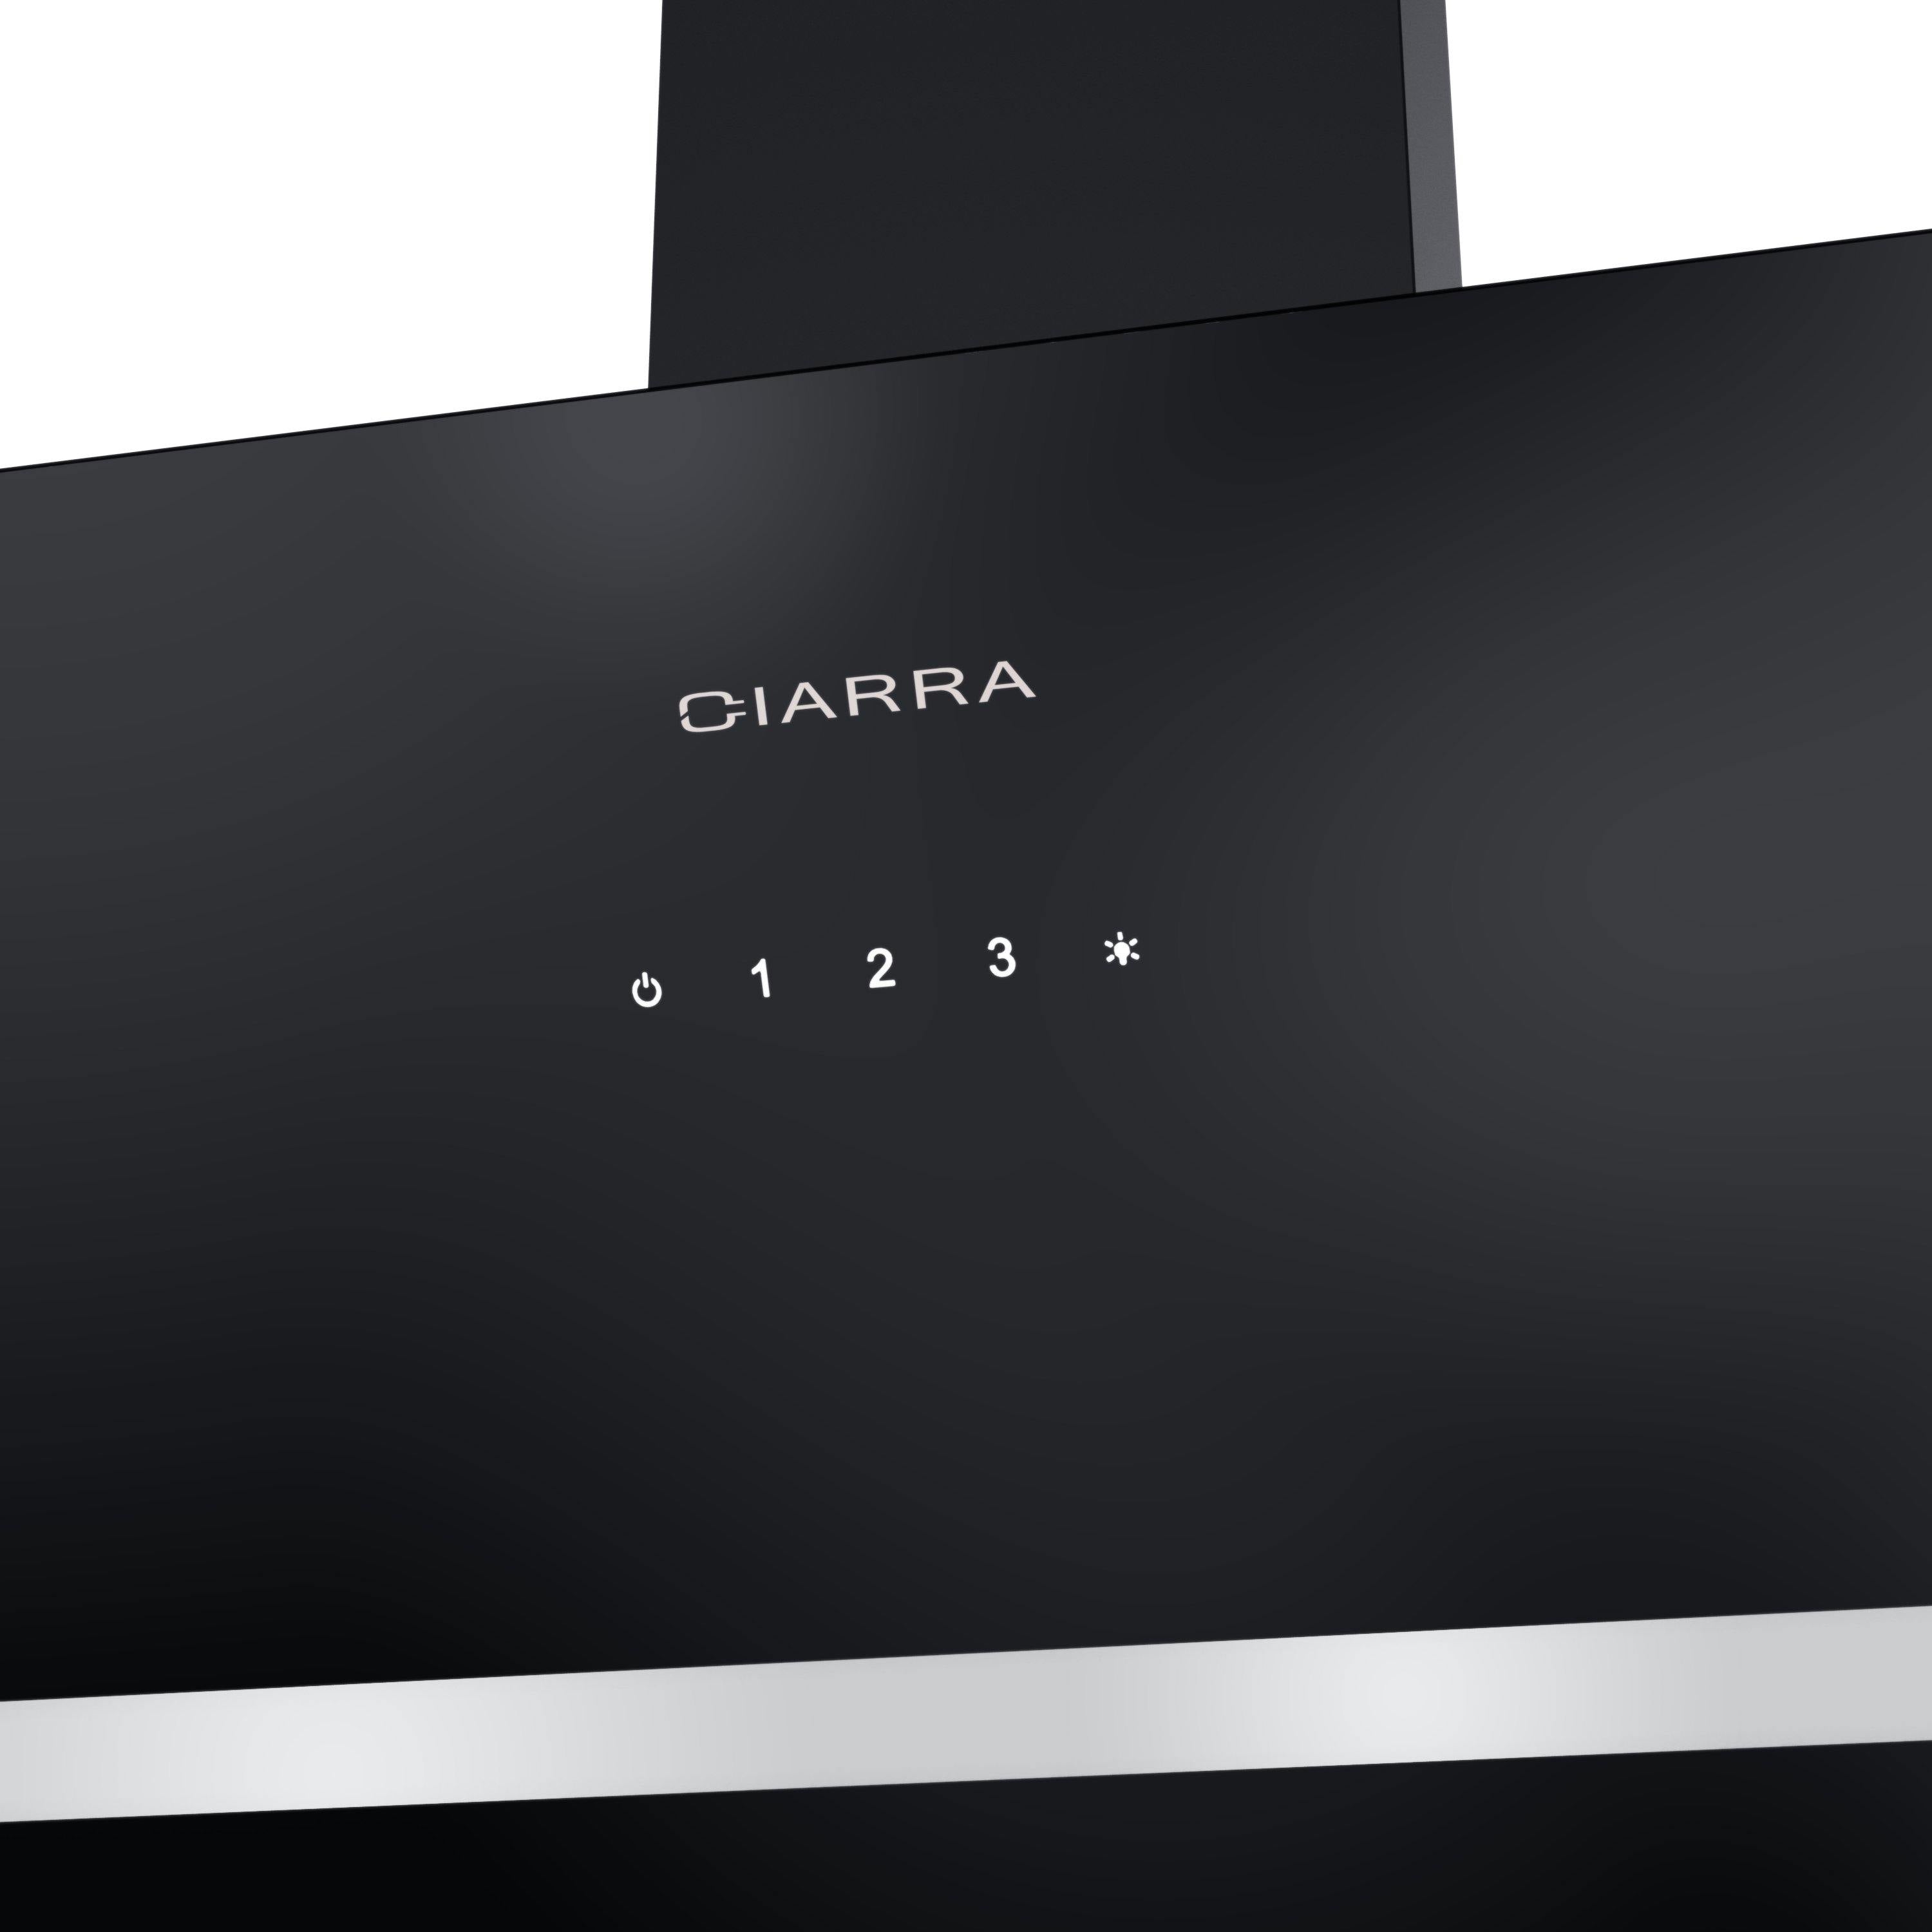 CIARRA Hotte Inclinée 60cm 370m³/h 3 Vitesses Eclairage LED Noir CBCB6